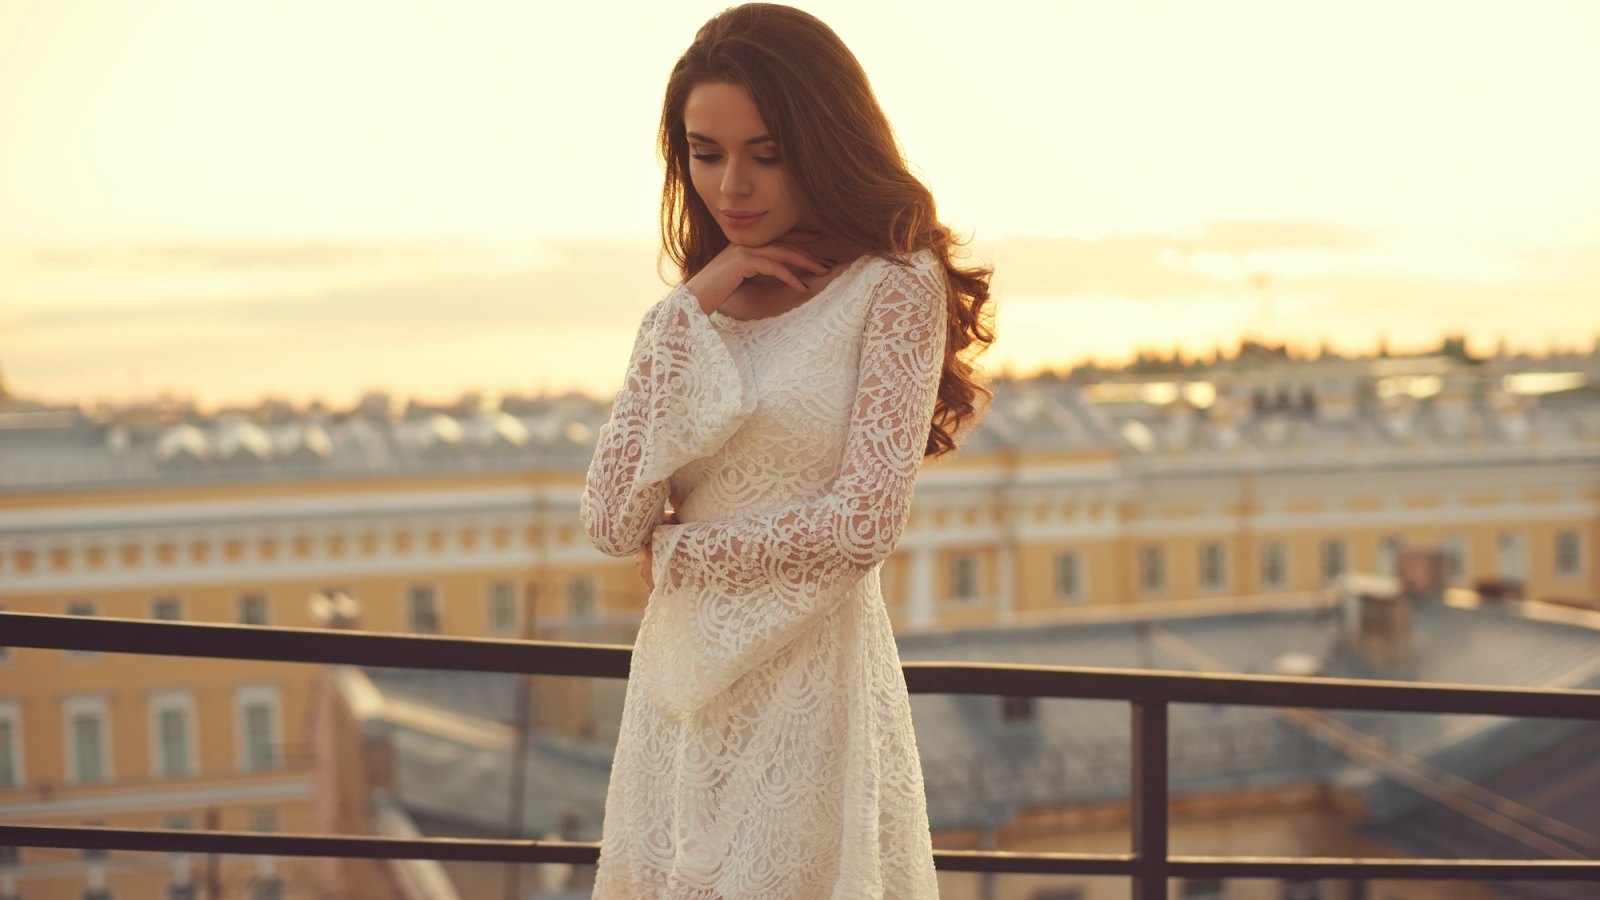 White-Lace-Dress-Stock-Photo